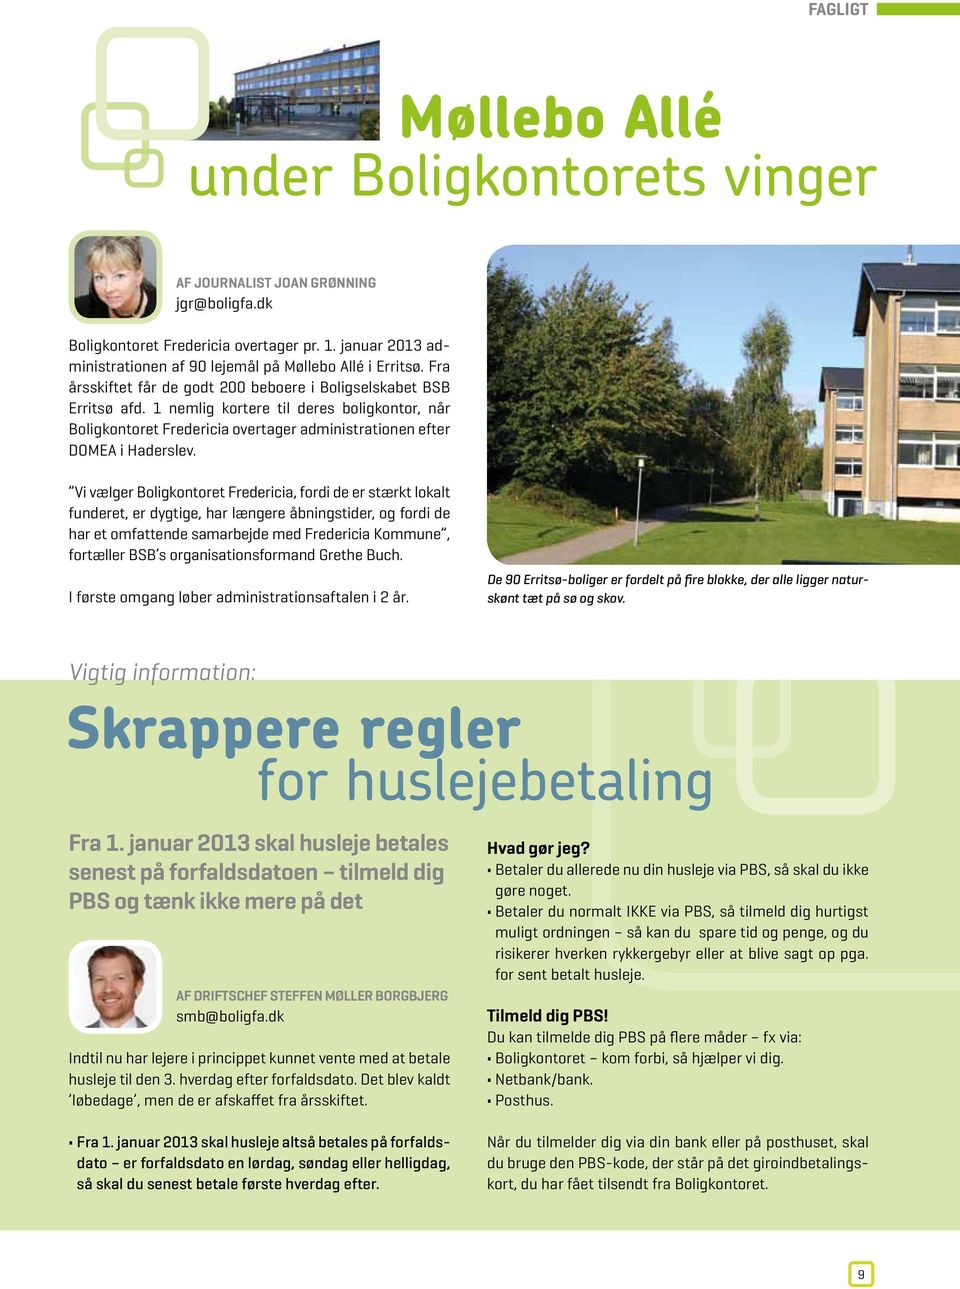 1 nemlig kortere til deres boligkontor, når Boligkontoret Fredericia overtager administrationen efter DOMEA i Haderslev.